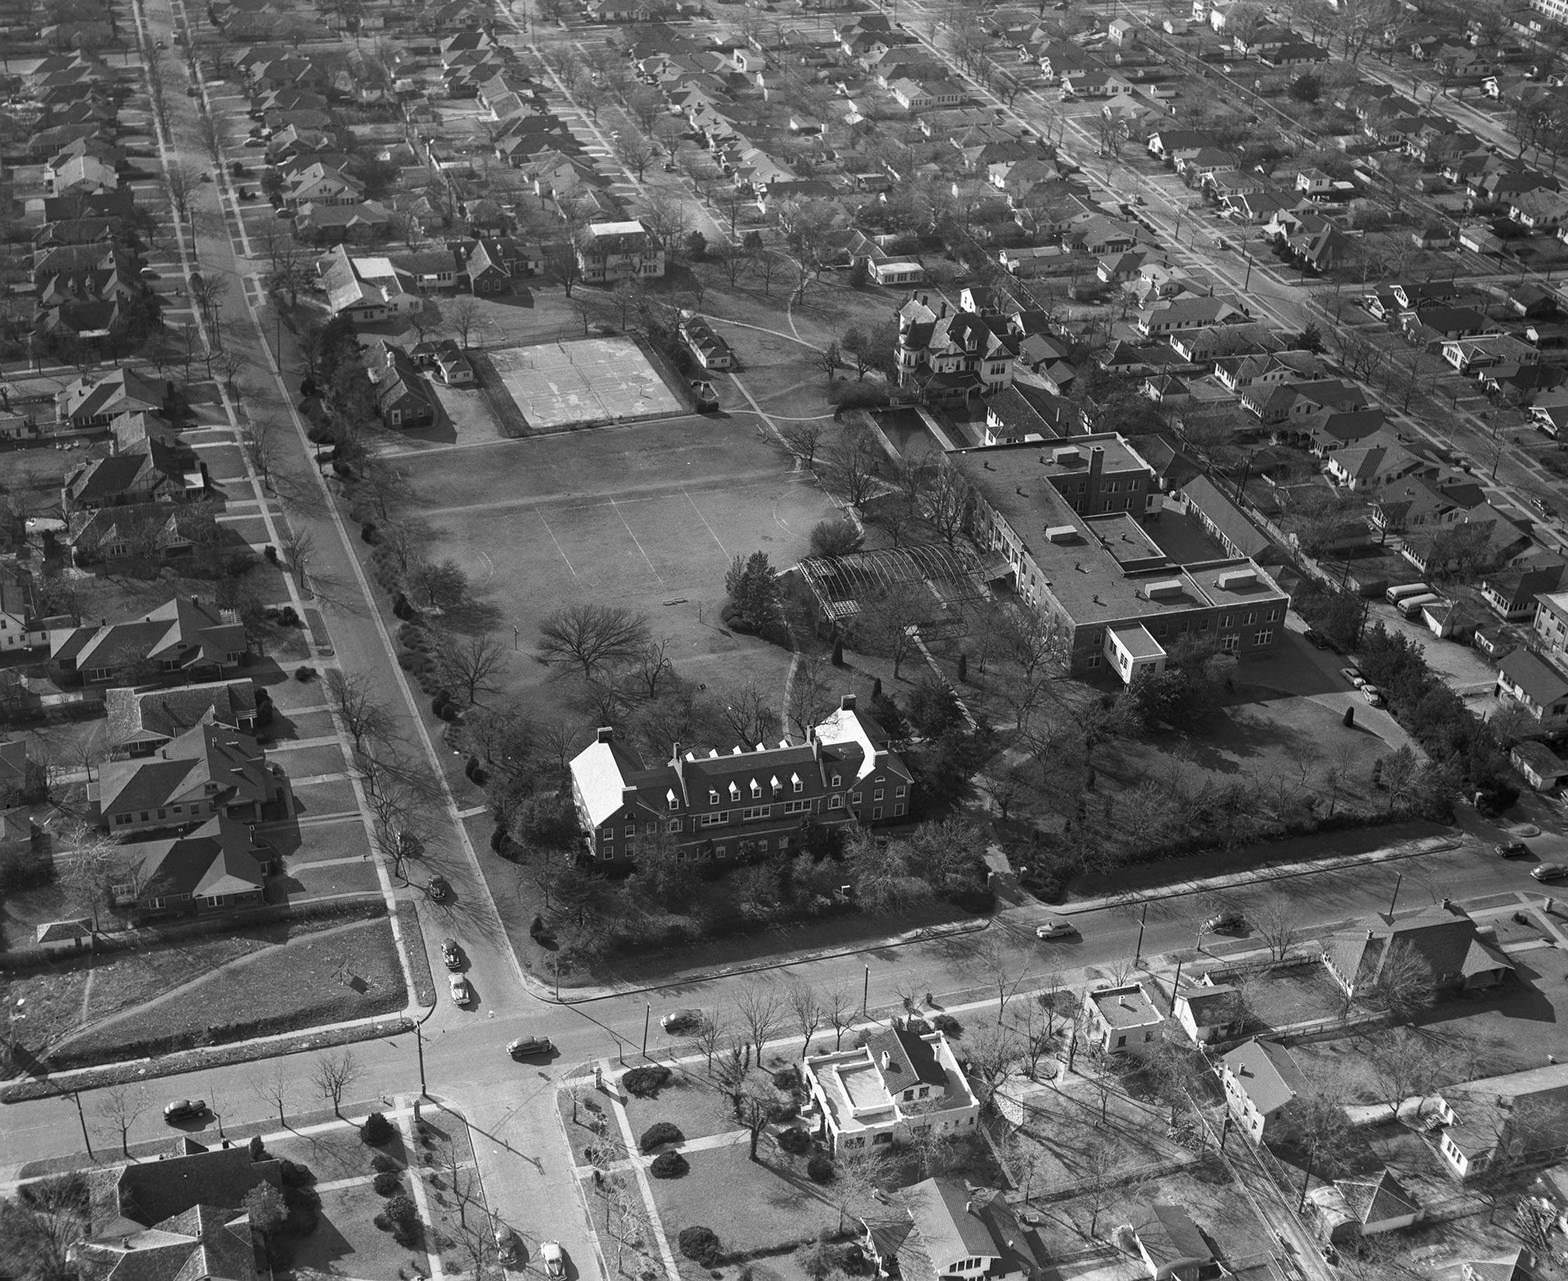 The Hockaday School, 1950